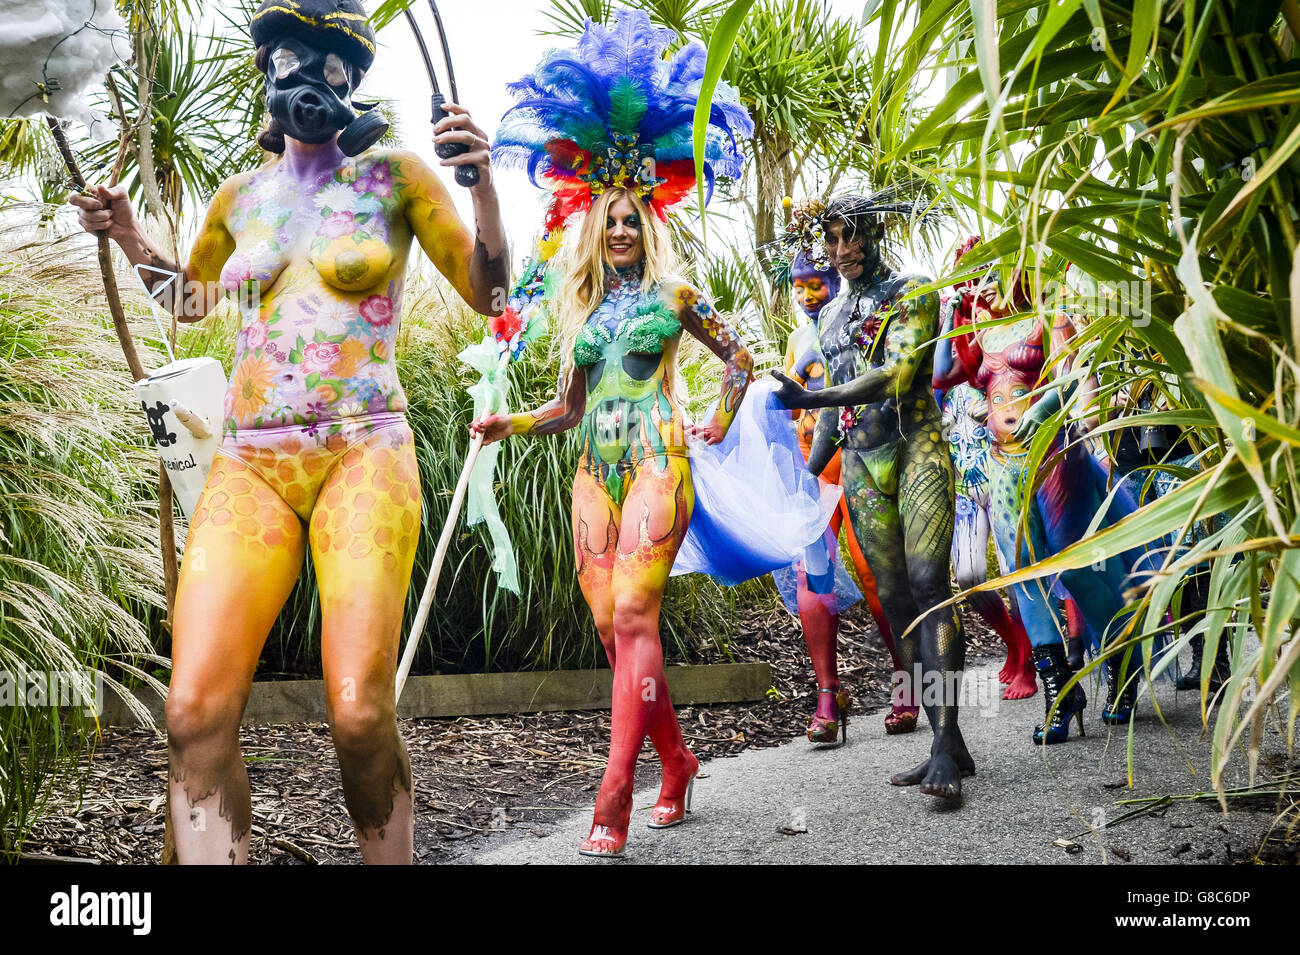 Während des zweitägigen BodyFactory International Body Painting Festivals im Eden Project, Cornwall, ziehen sich Models durch das Laub, während sie im Mittelmeer-Biom umziehen. Stockfoto